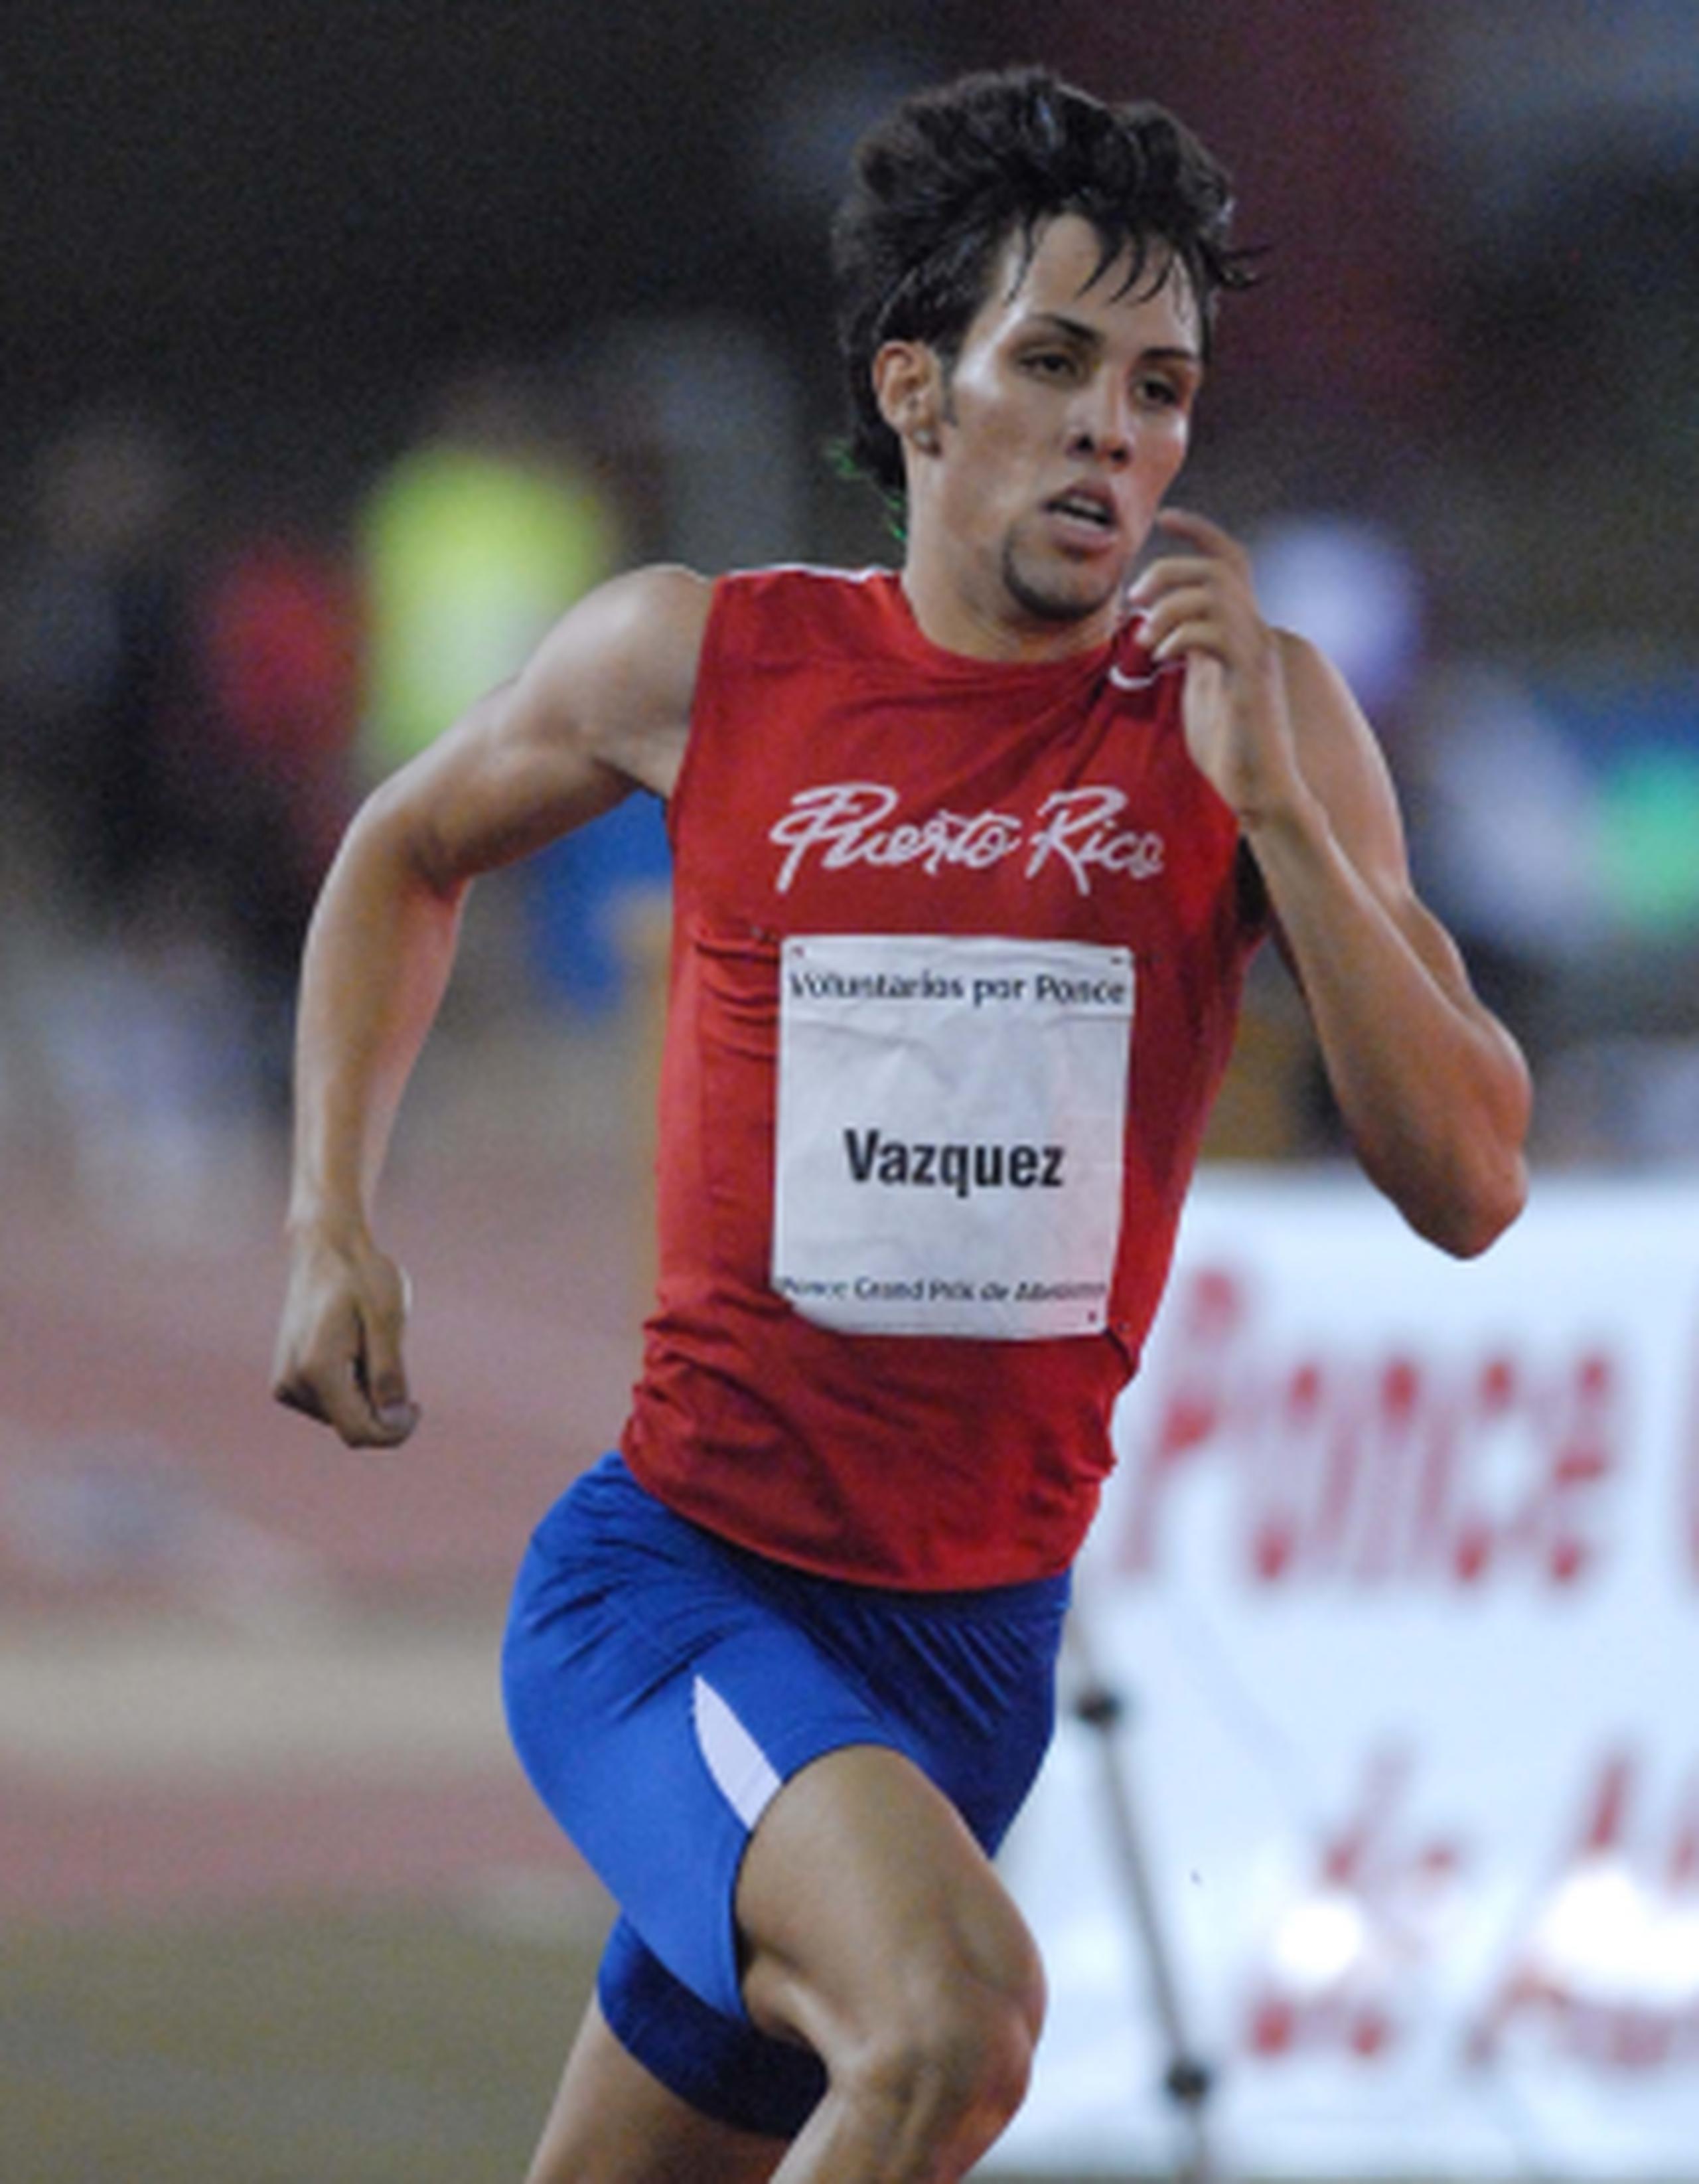 El récord anterior le pertenecía -precisamente- a Vázquez, un 1:45.29 realizado en Barcelona, España, en julio de 2012.(Archivo)